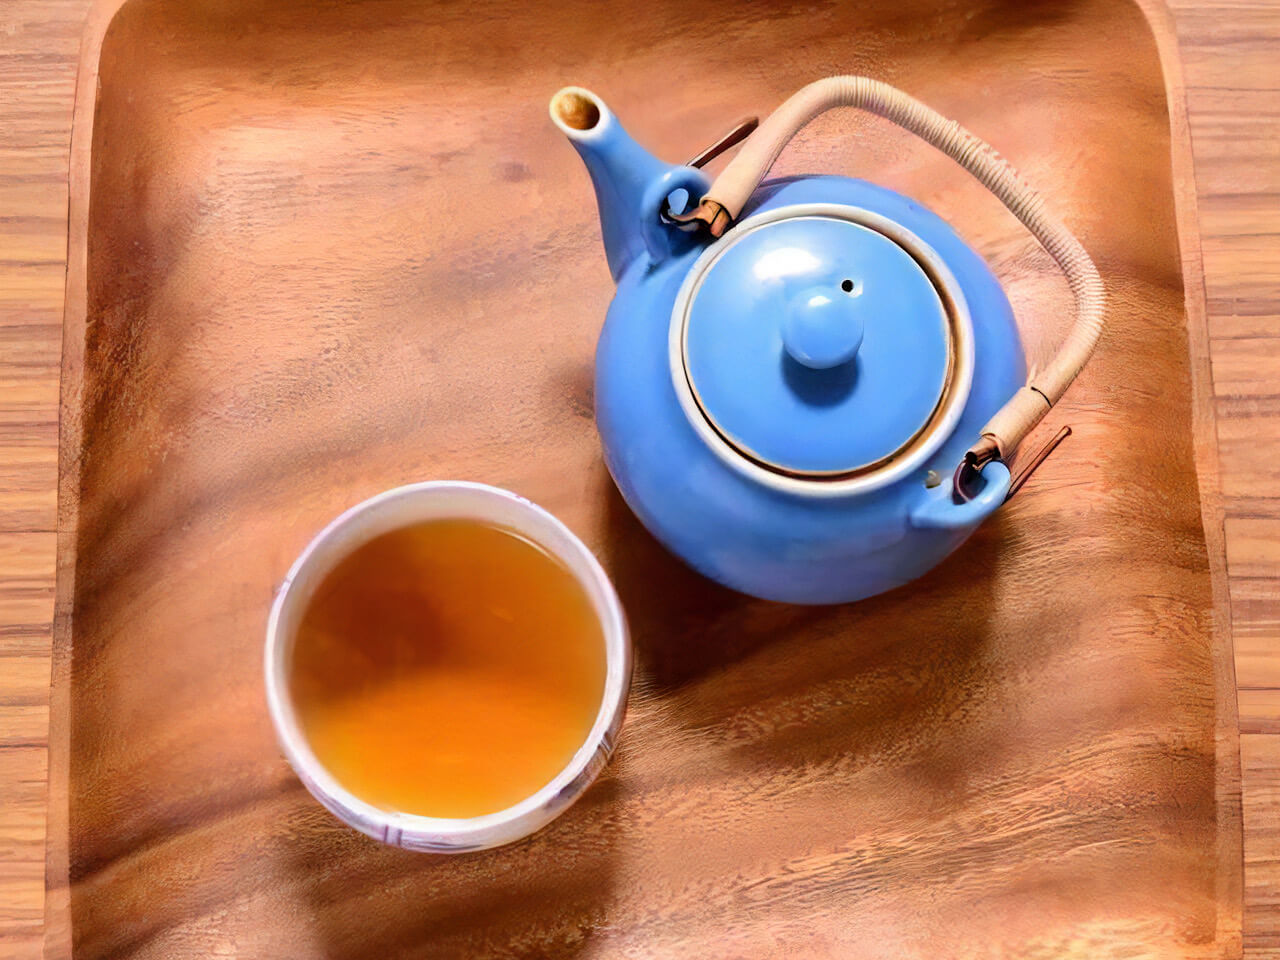 ドクダミ茶